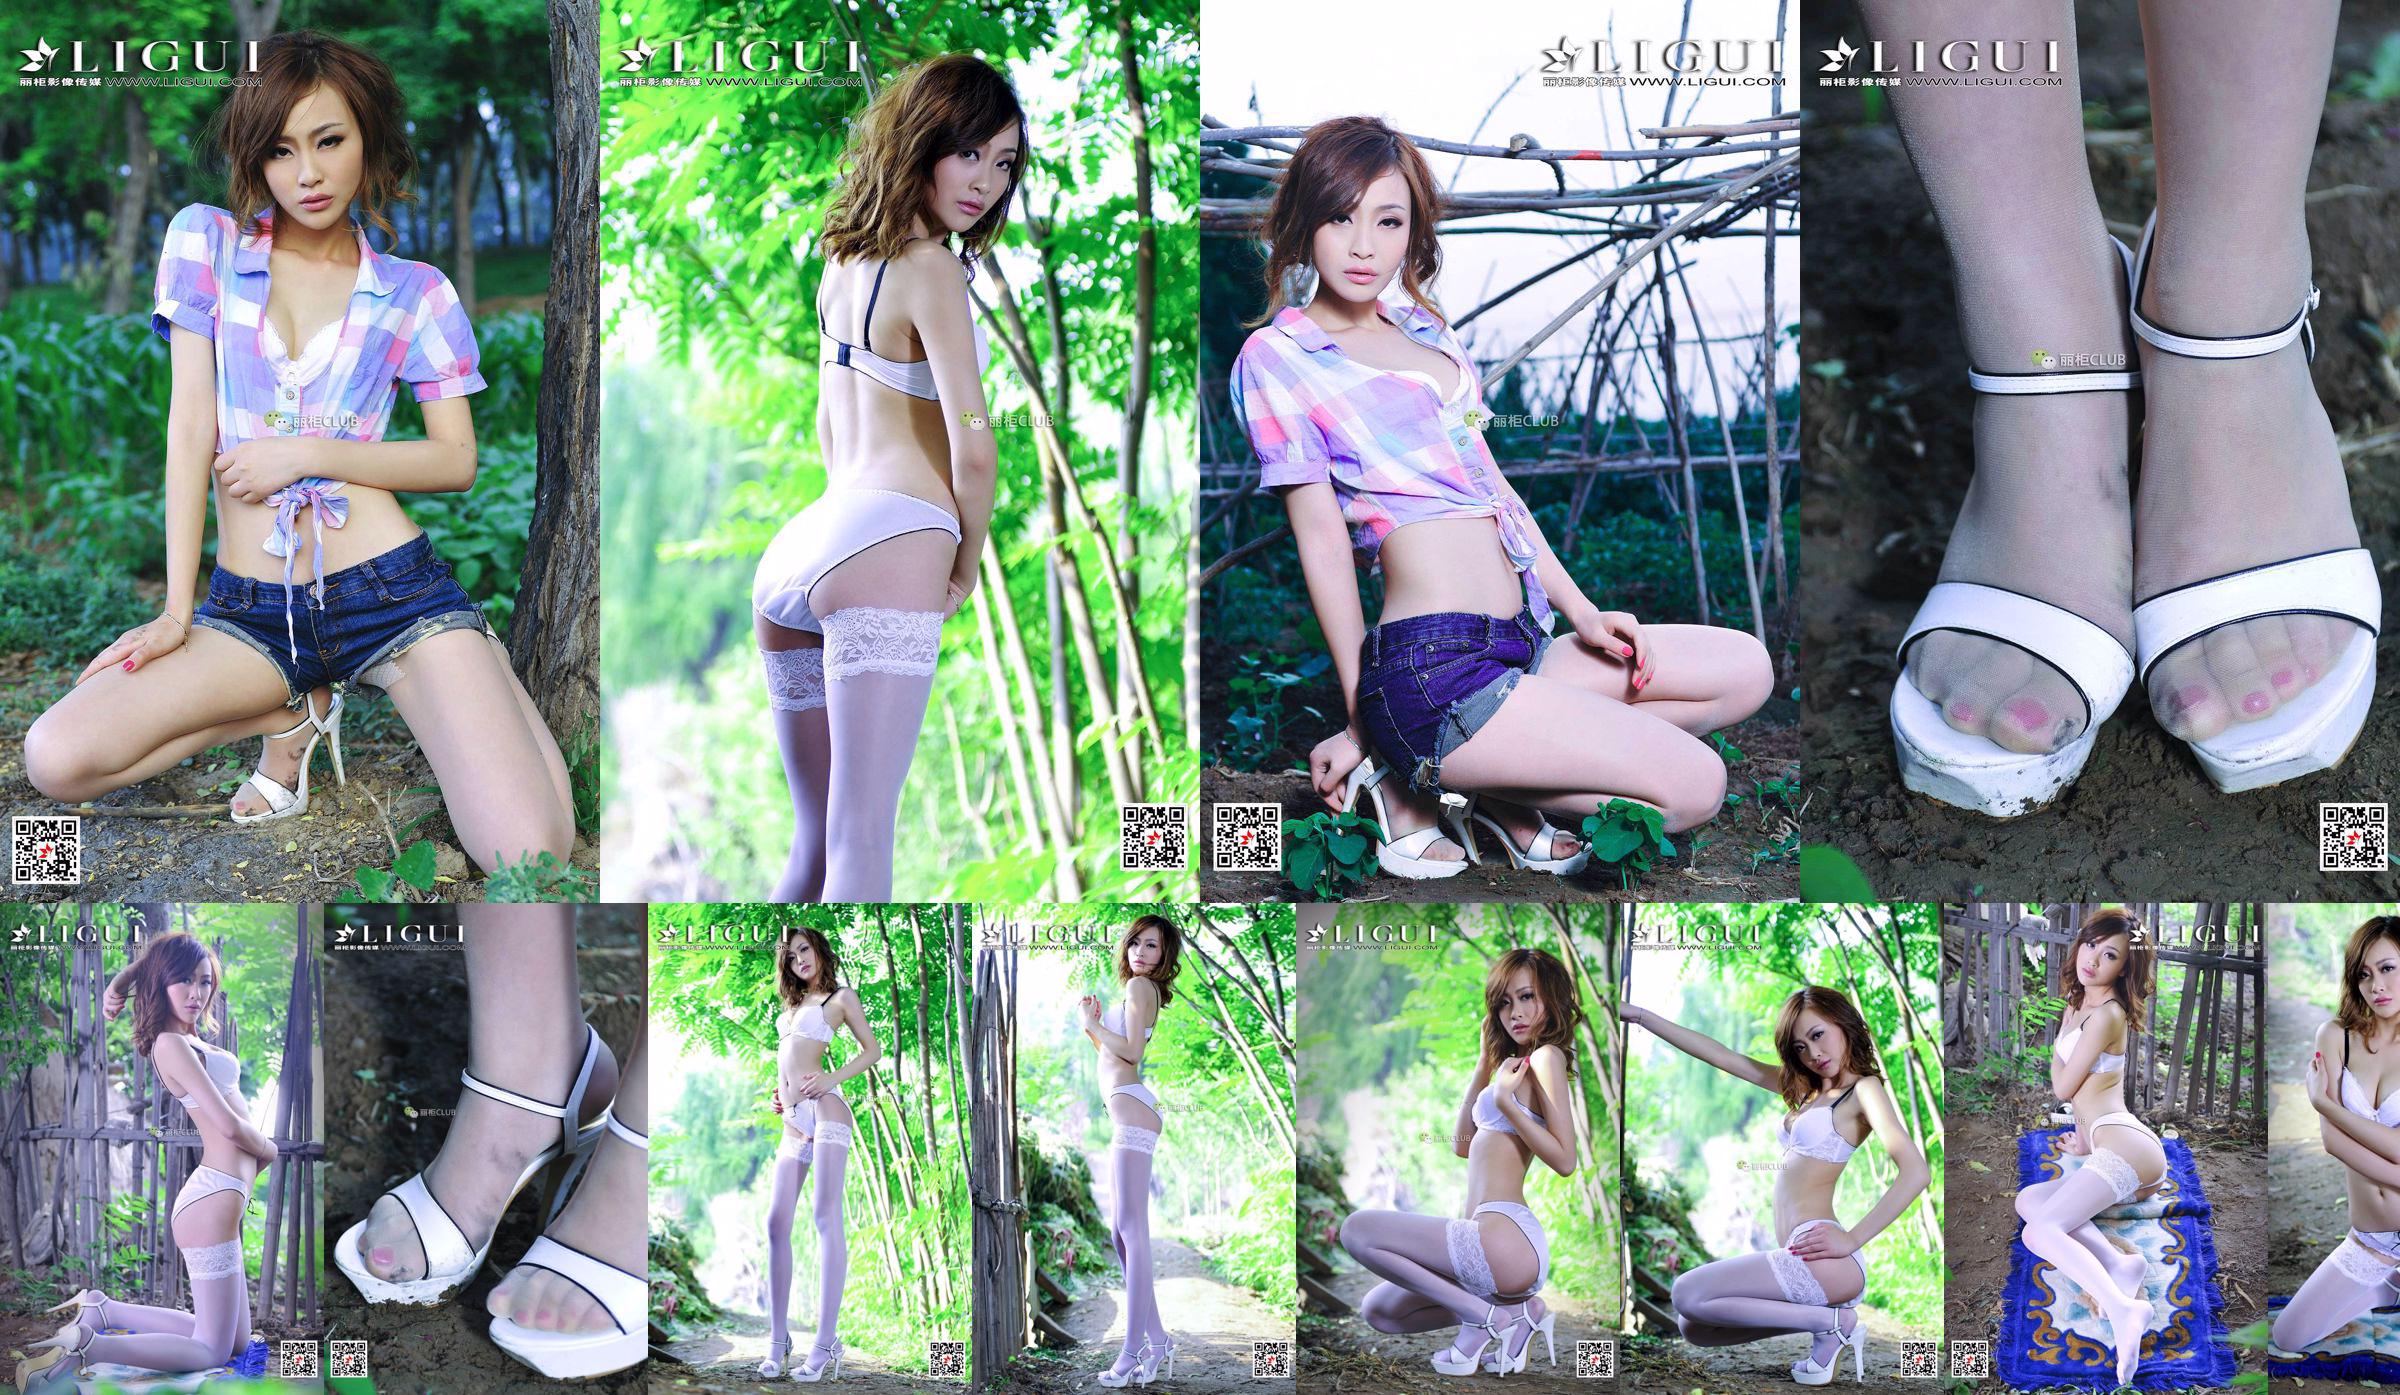 Leg model Tong Lei "White Silk Beautiful Leg Girl" [LIGUI] Beautiful Legs in Stockings No.2d1c83 Page 1